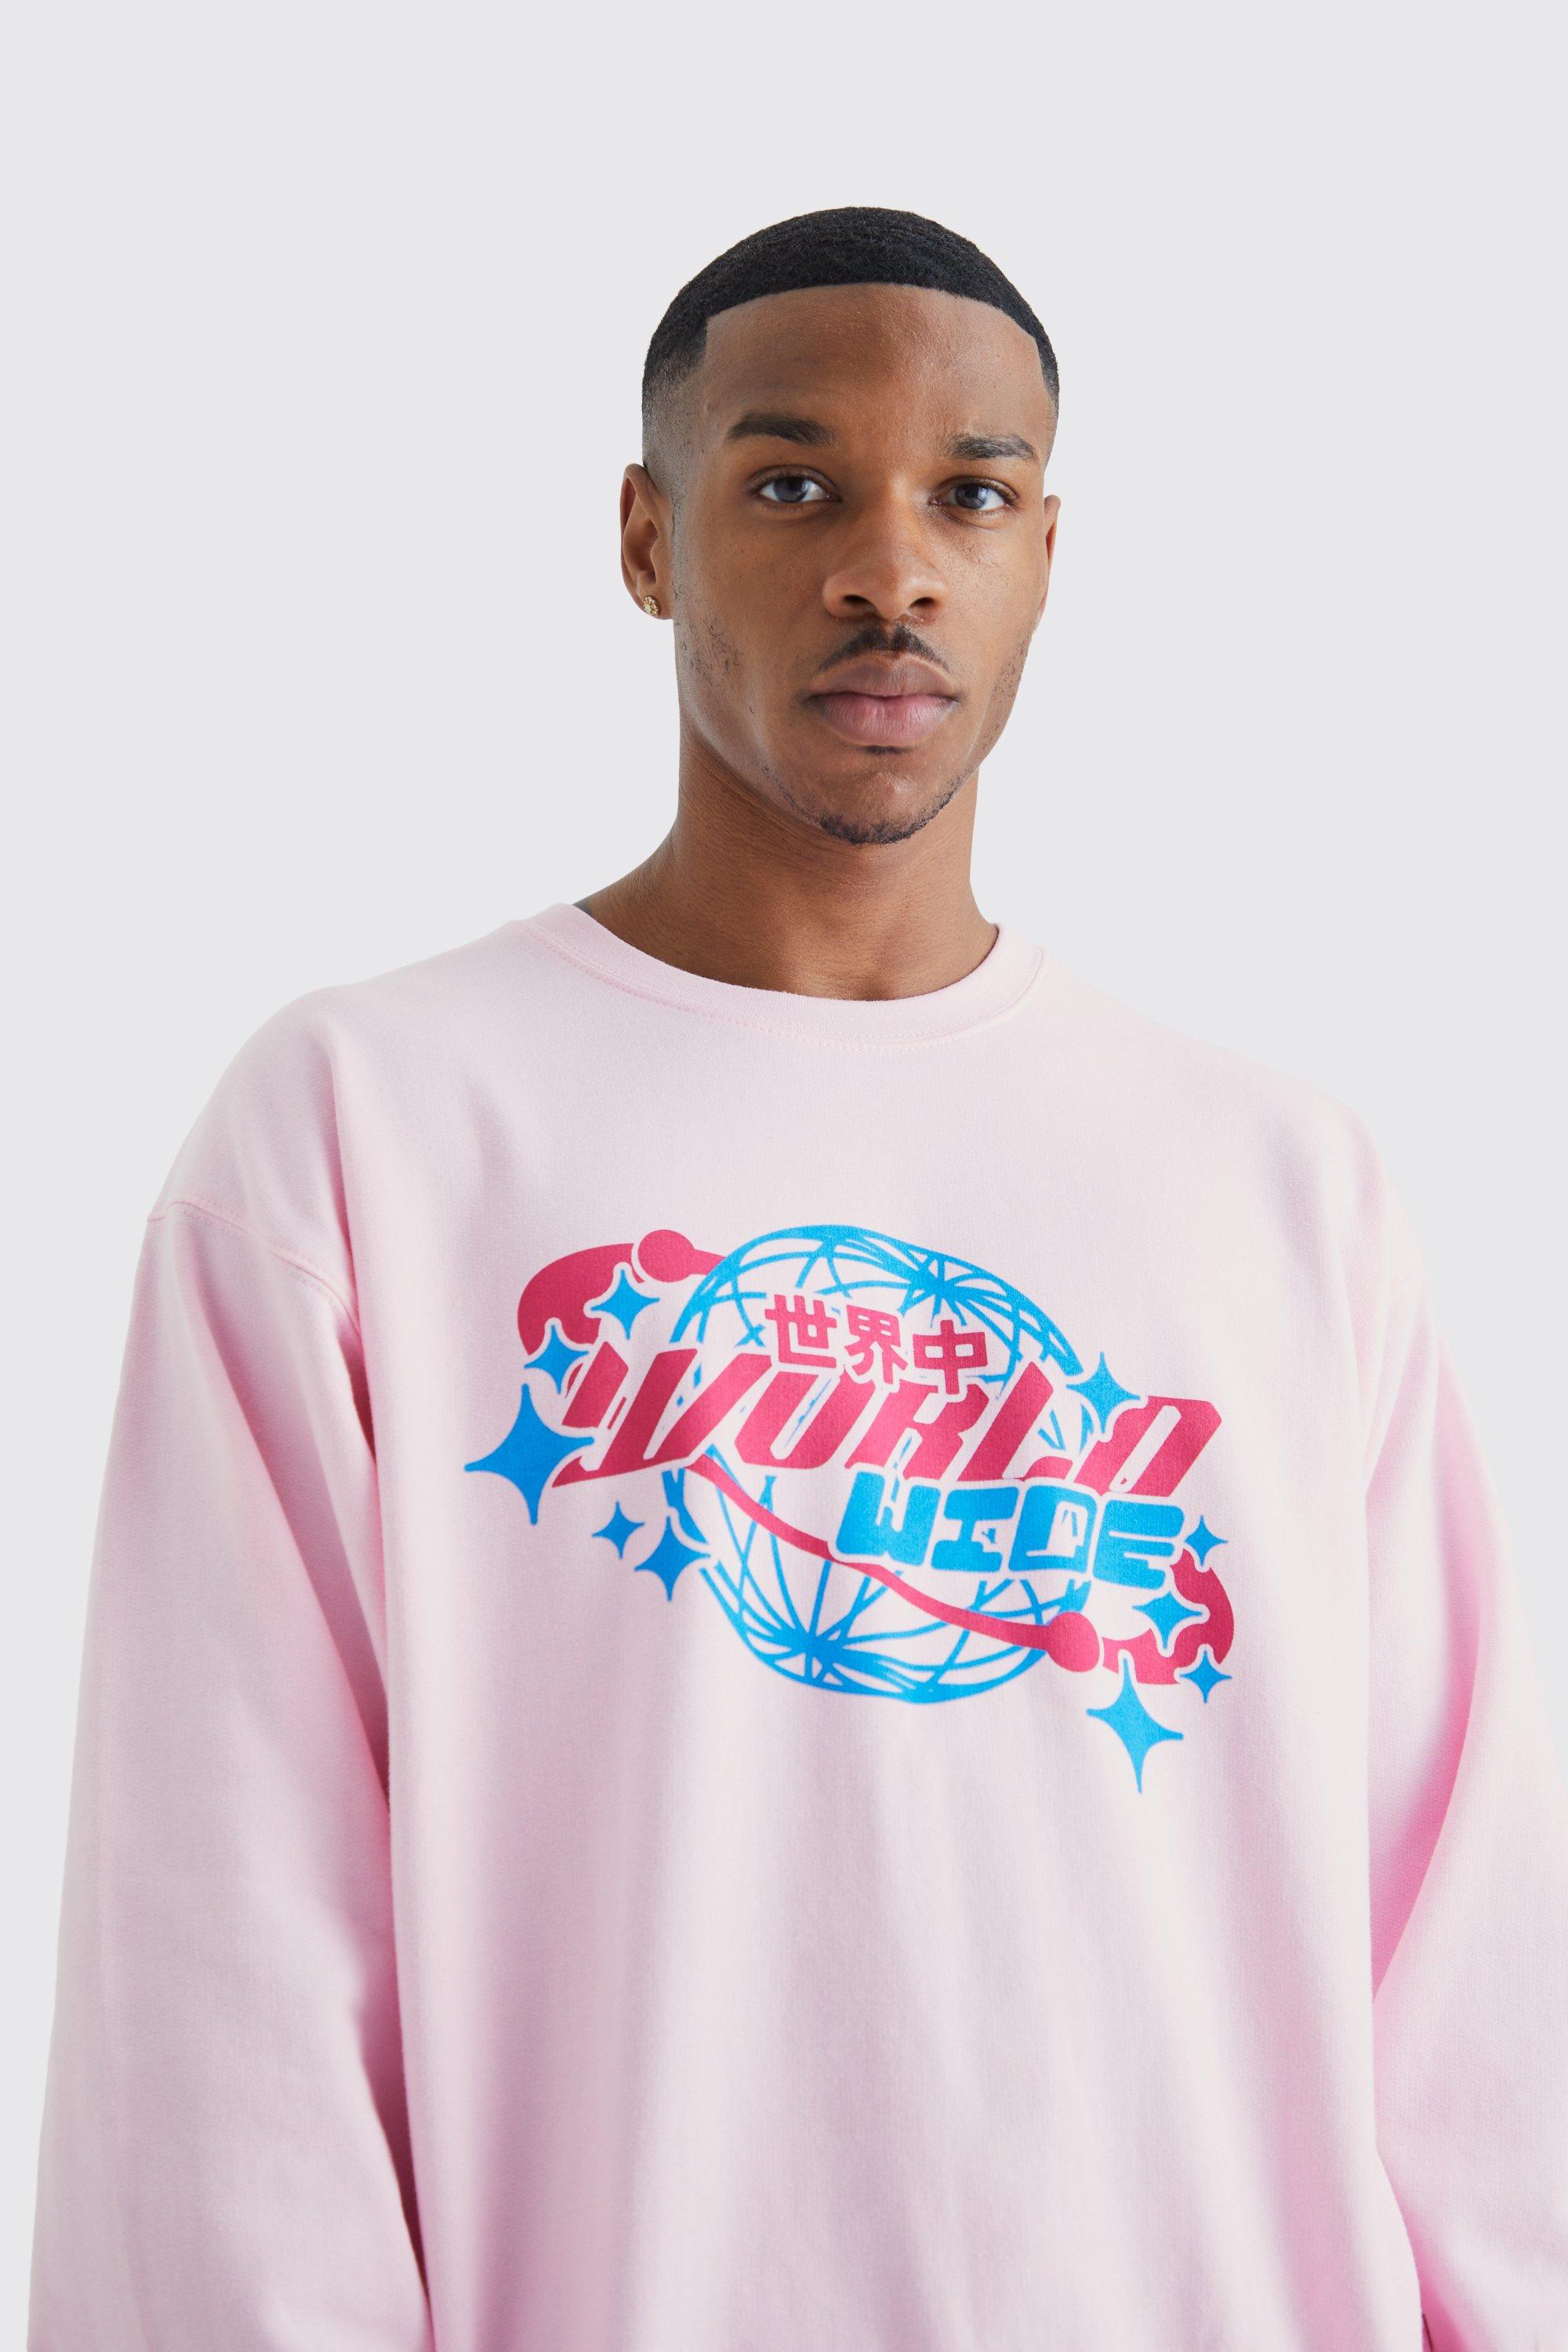 Worldwide Graphic Sweatshirt